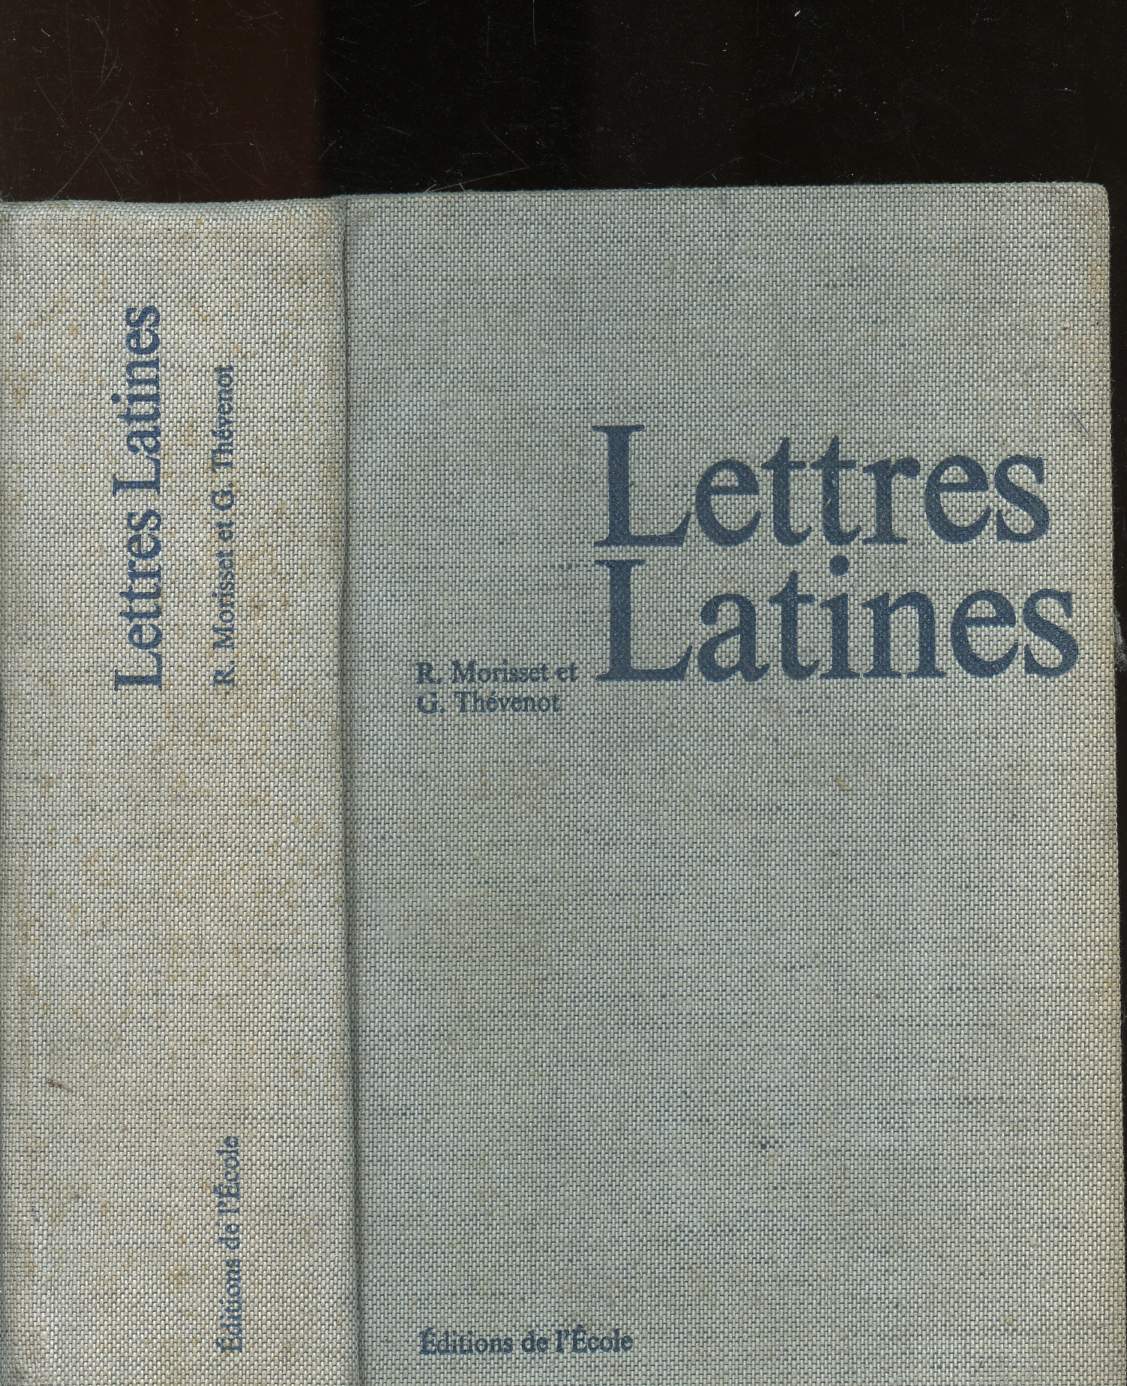 Les Lettres latines : histore littrair, principales oeuvres, morceaux choisis